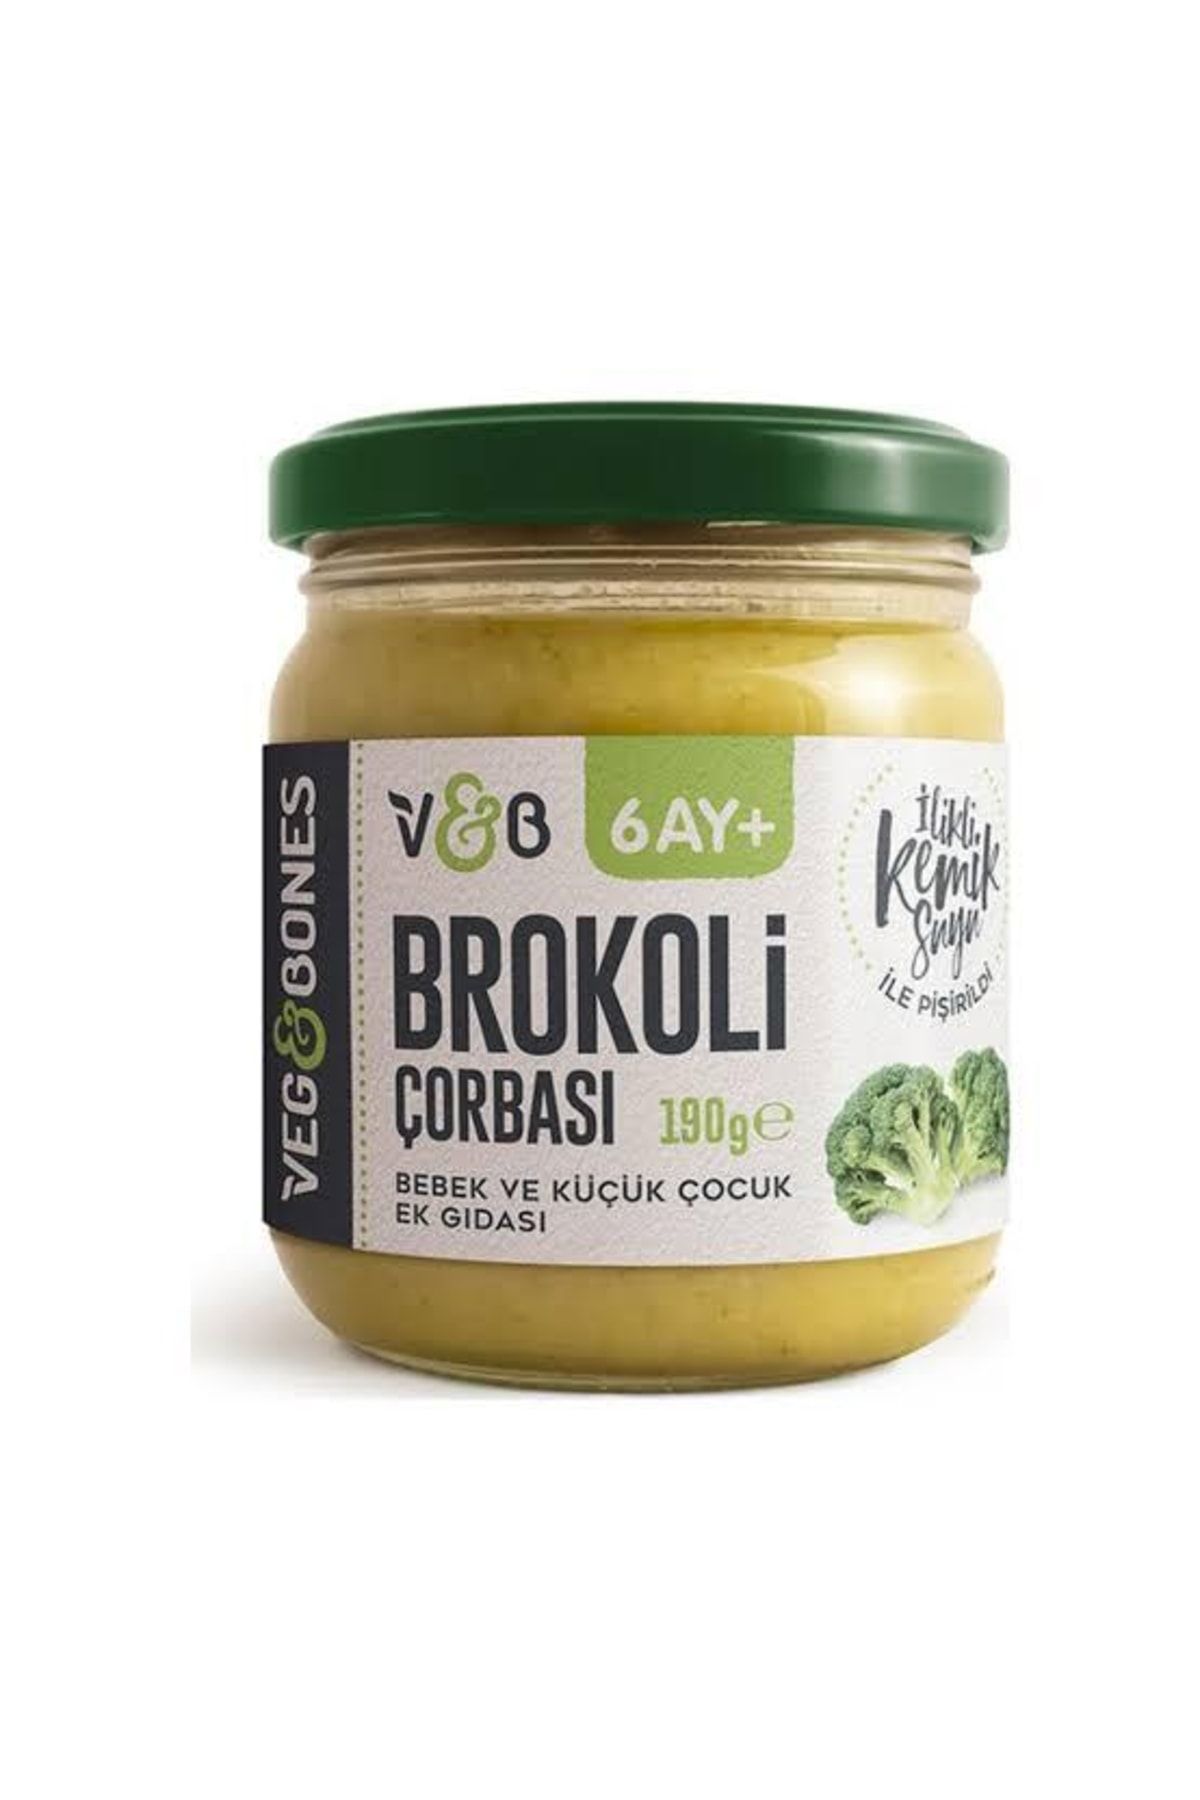 Veg&Bones Brokoli Çorbası 190g 6 Adet